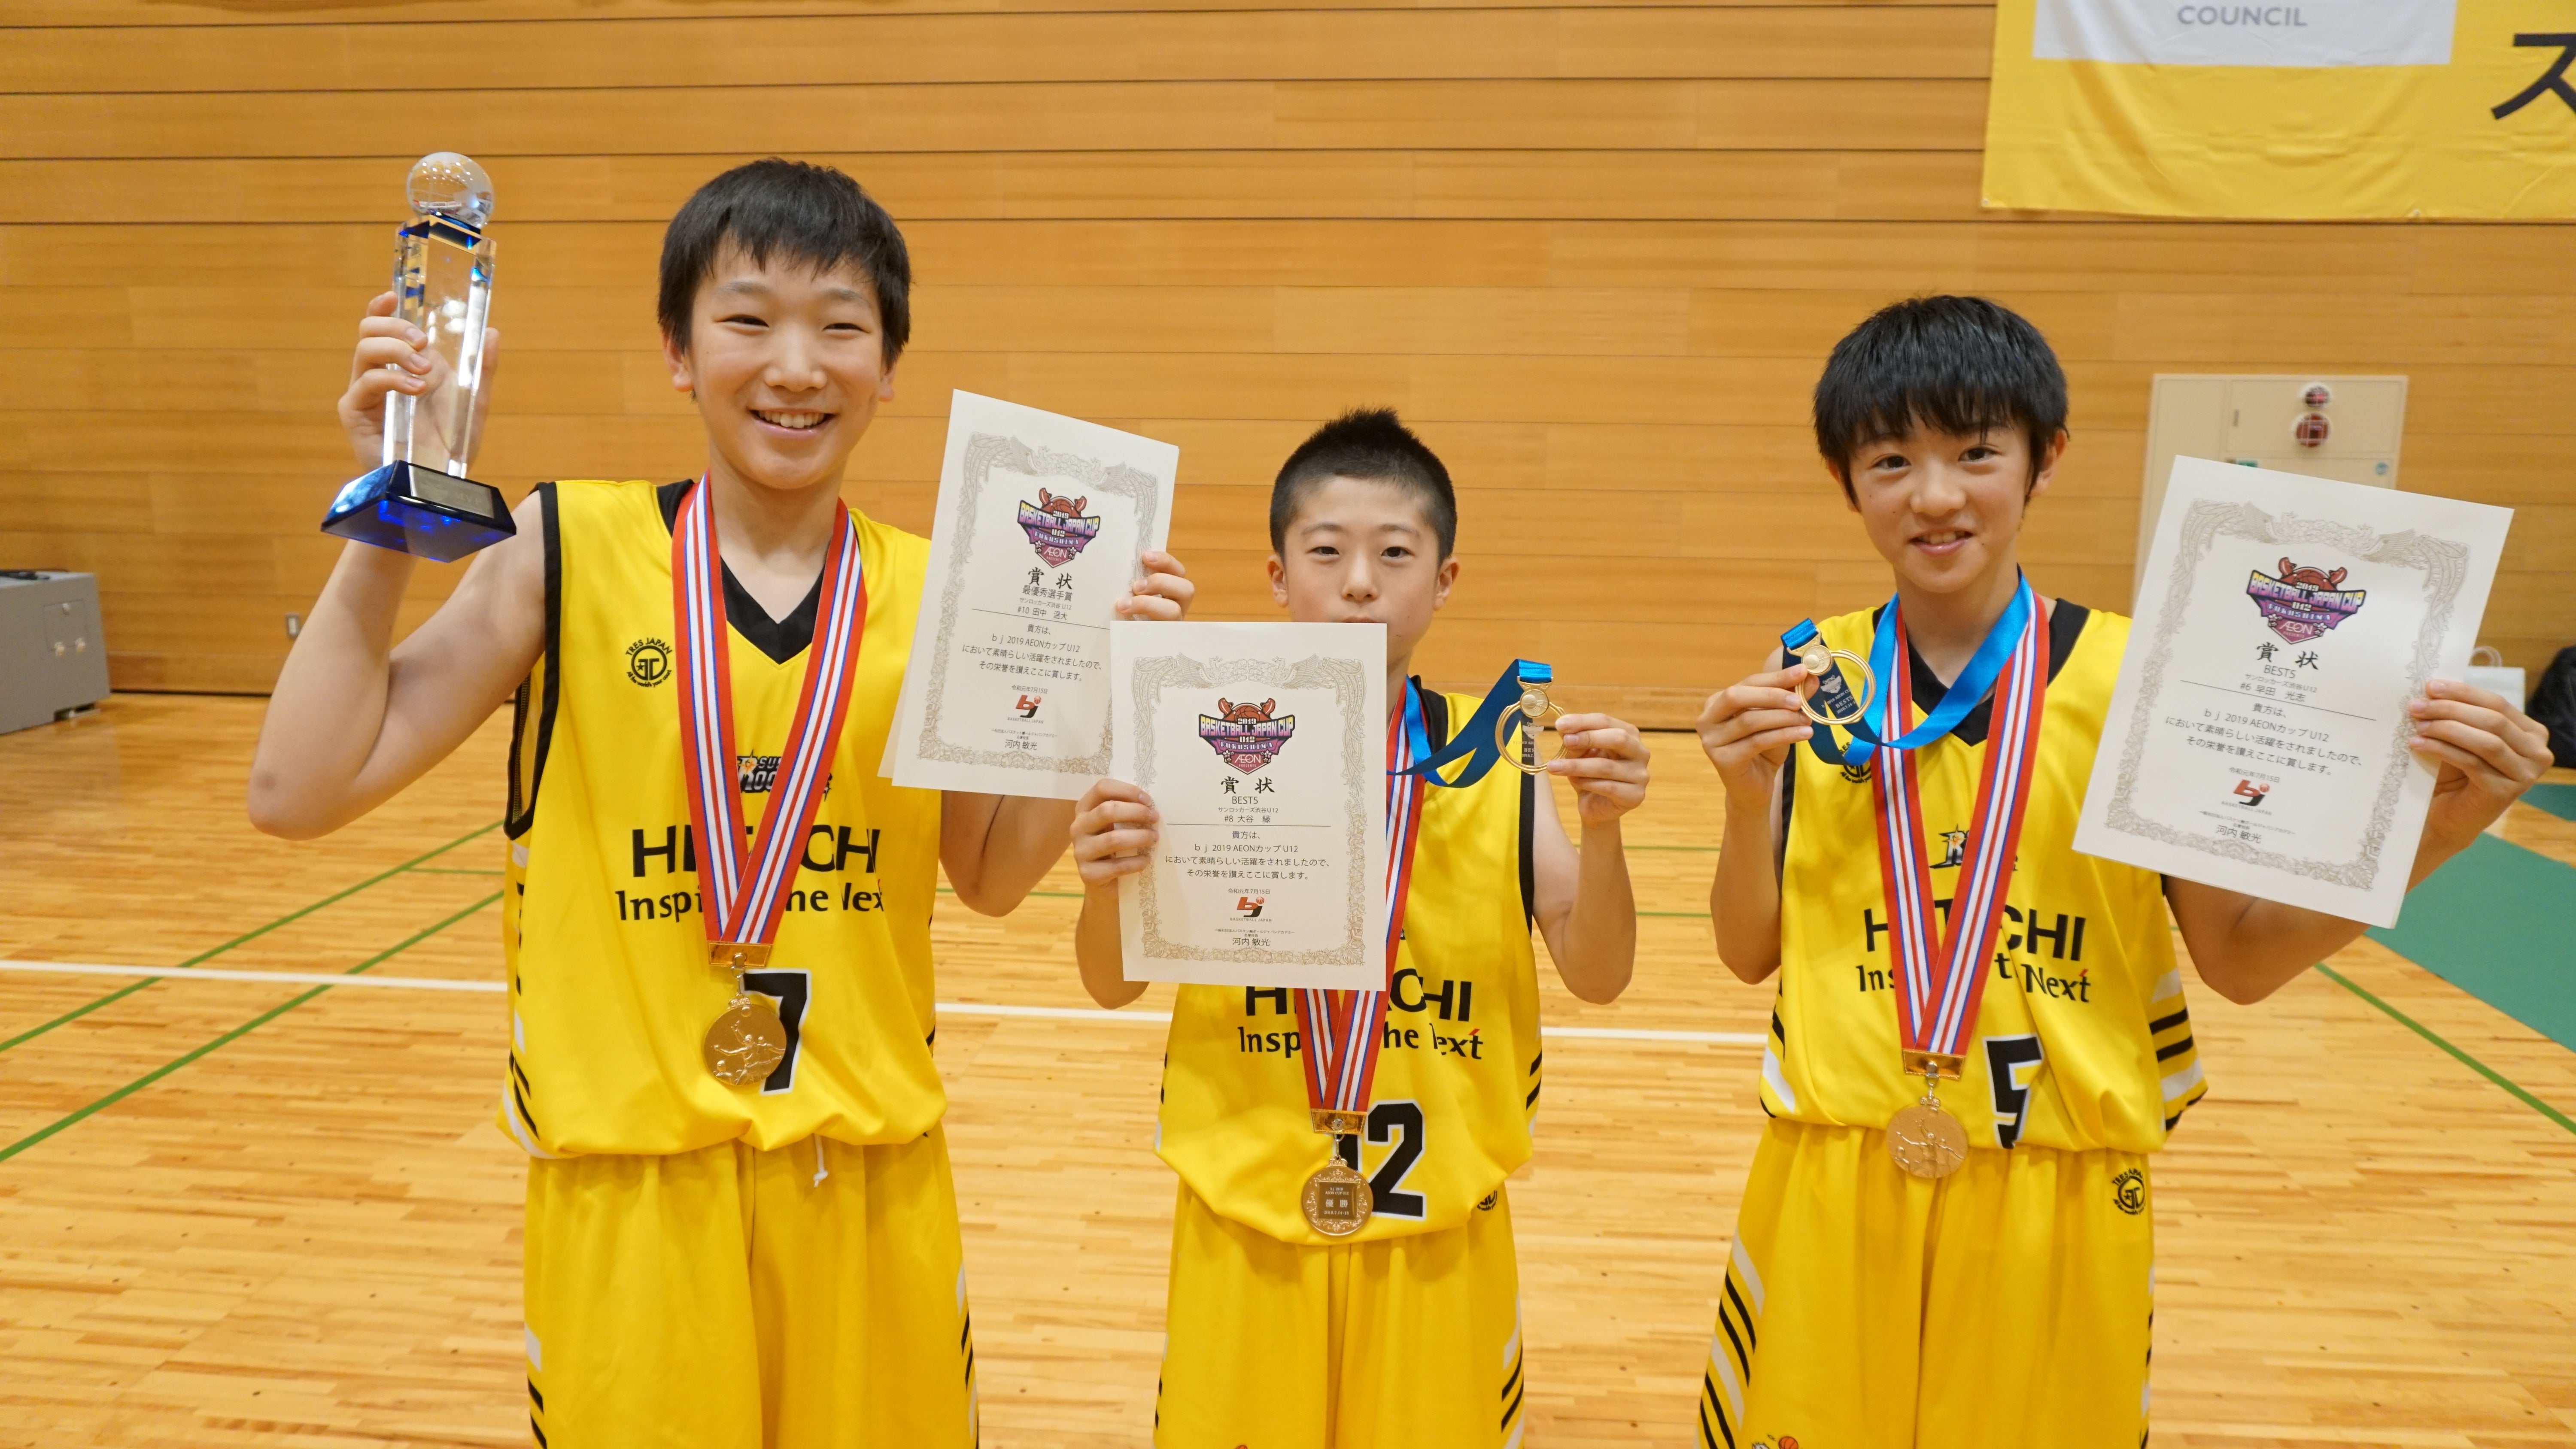 個人賞をとった田中選手(左)、大谷選手(中央)、早田選手(右)